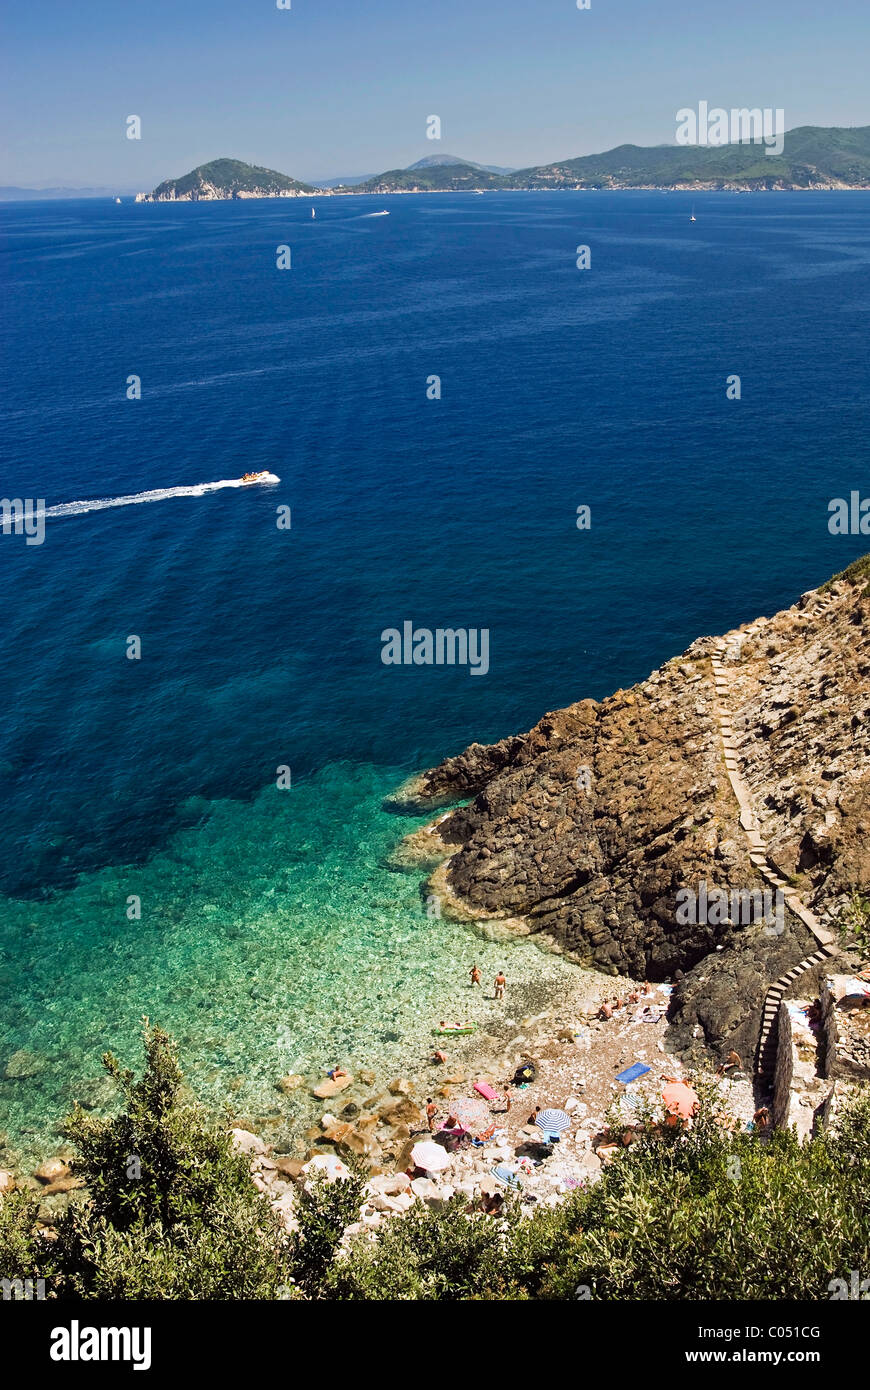 Marciana Marina, Isola d'Elba, Elba, Tuscany, Italy Stock Photo